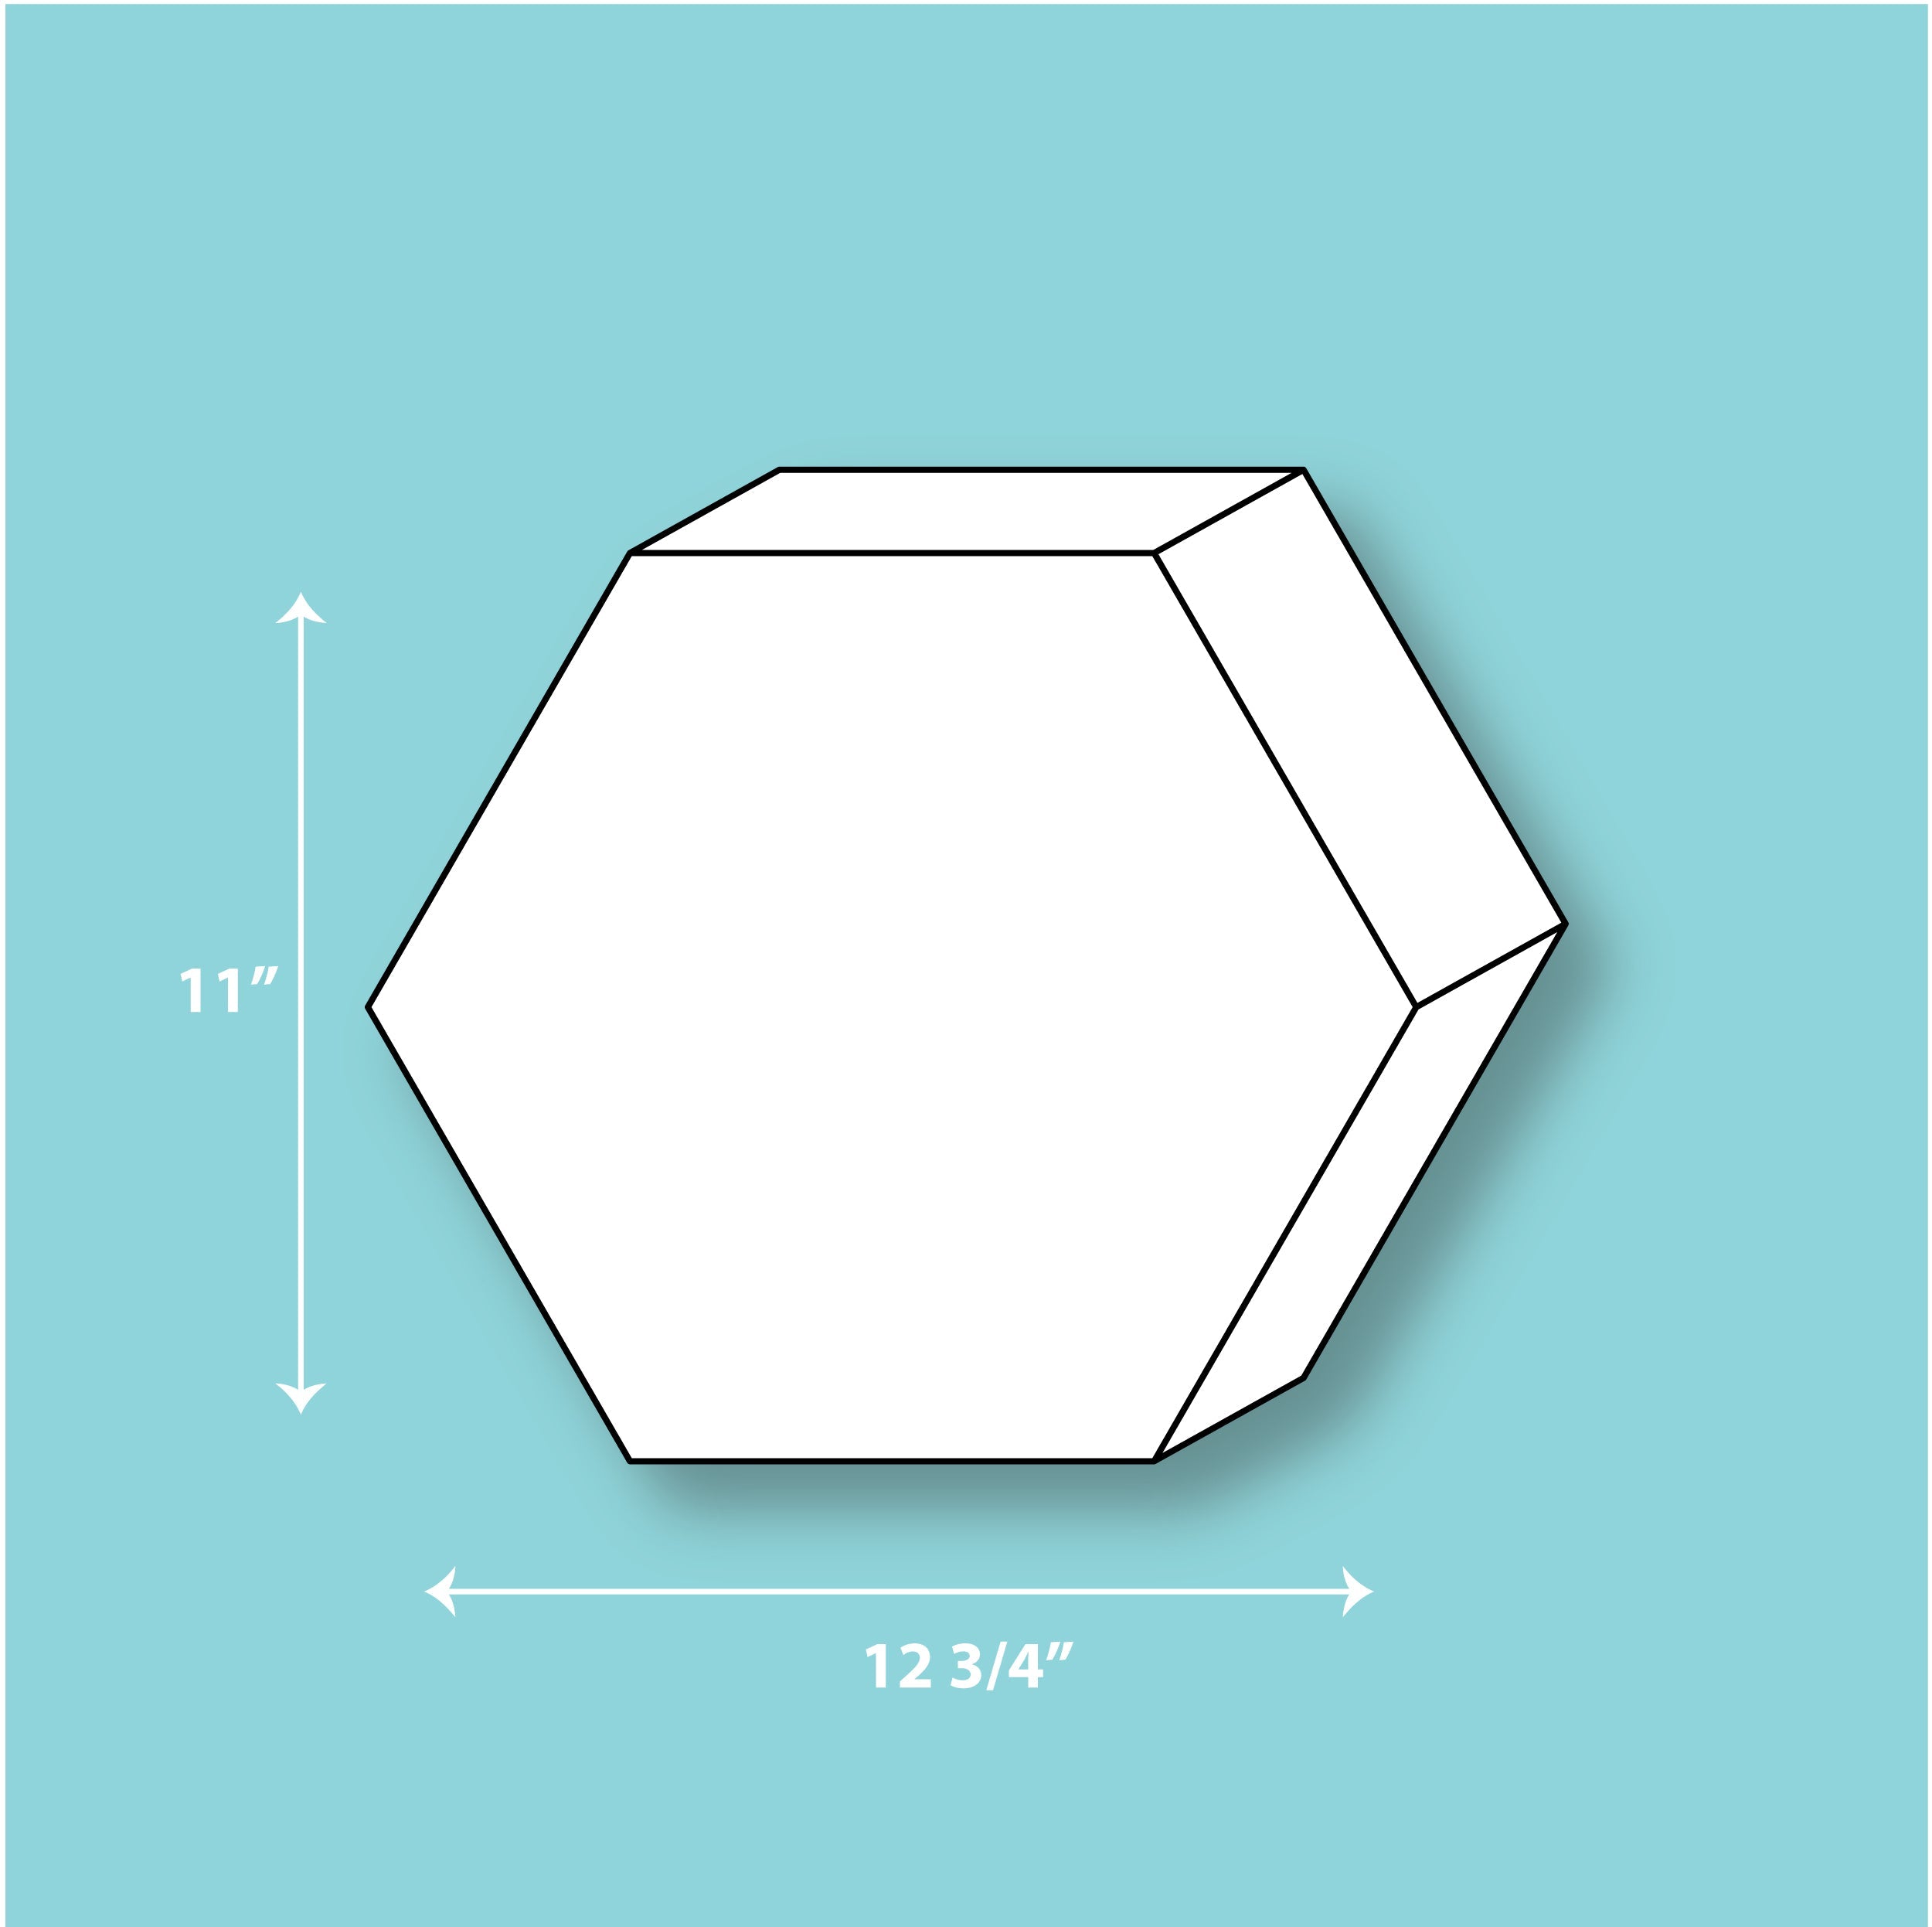 11" x 3" Silicone Hexagon Mold